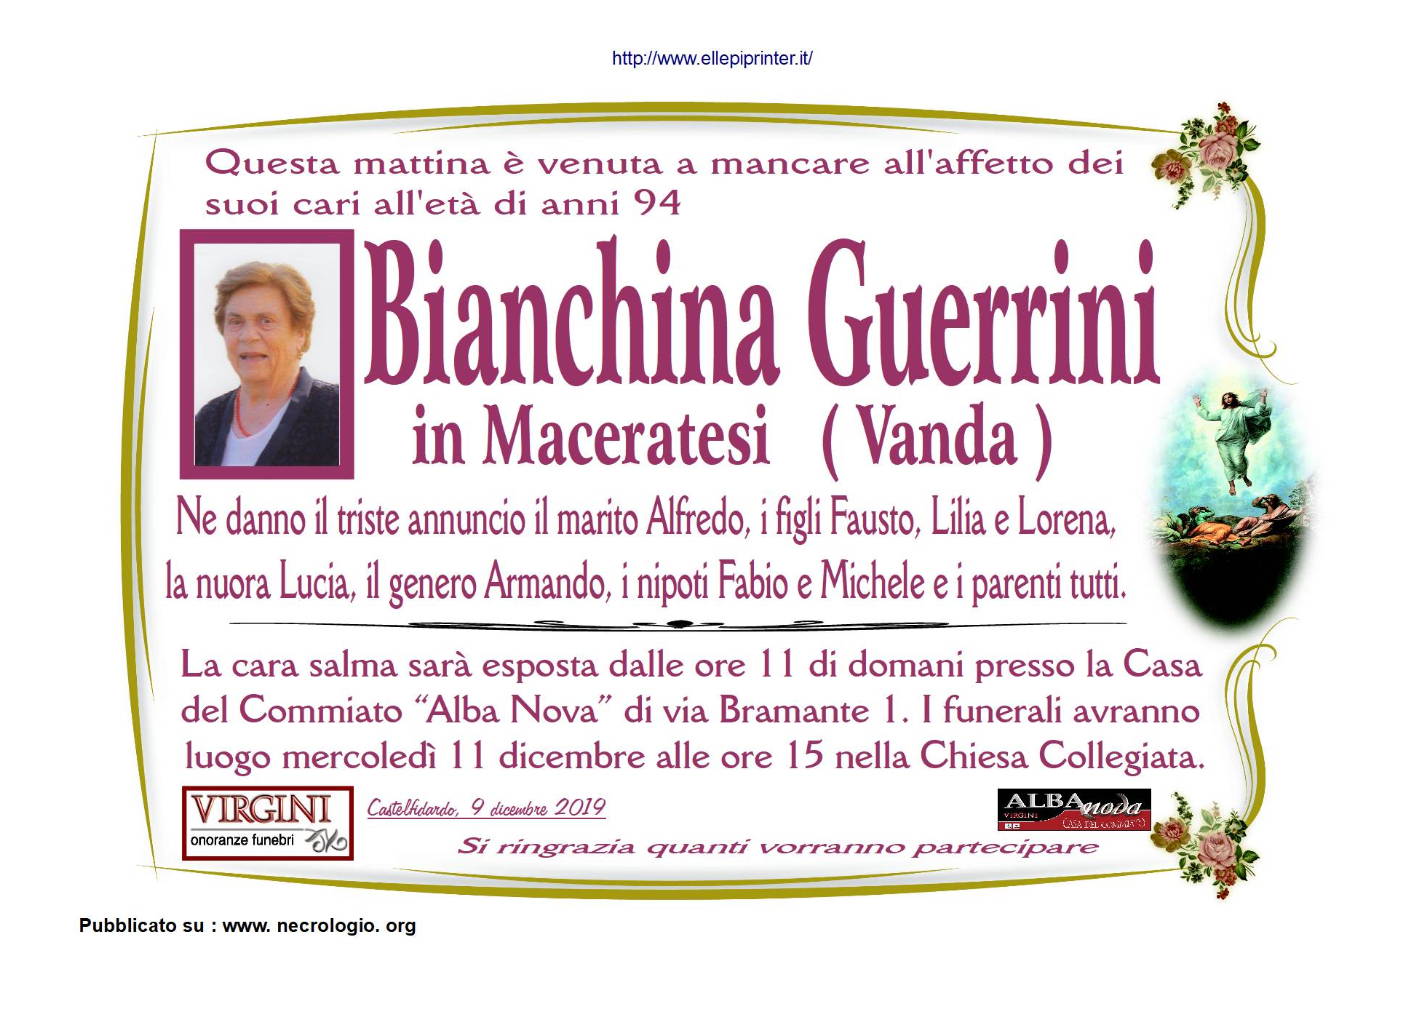 Bianchina  Guerrini